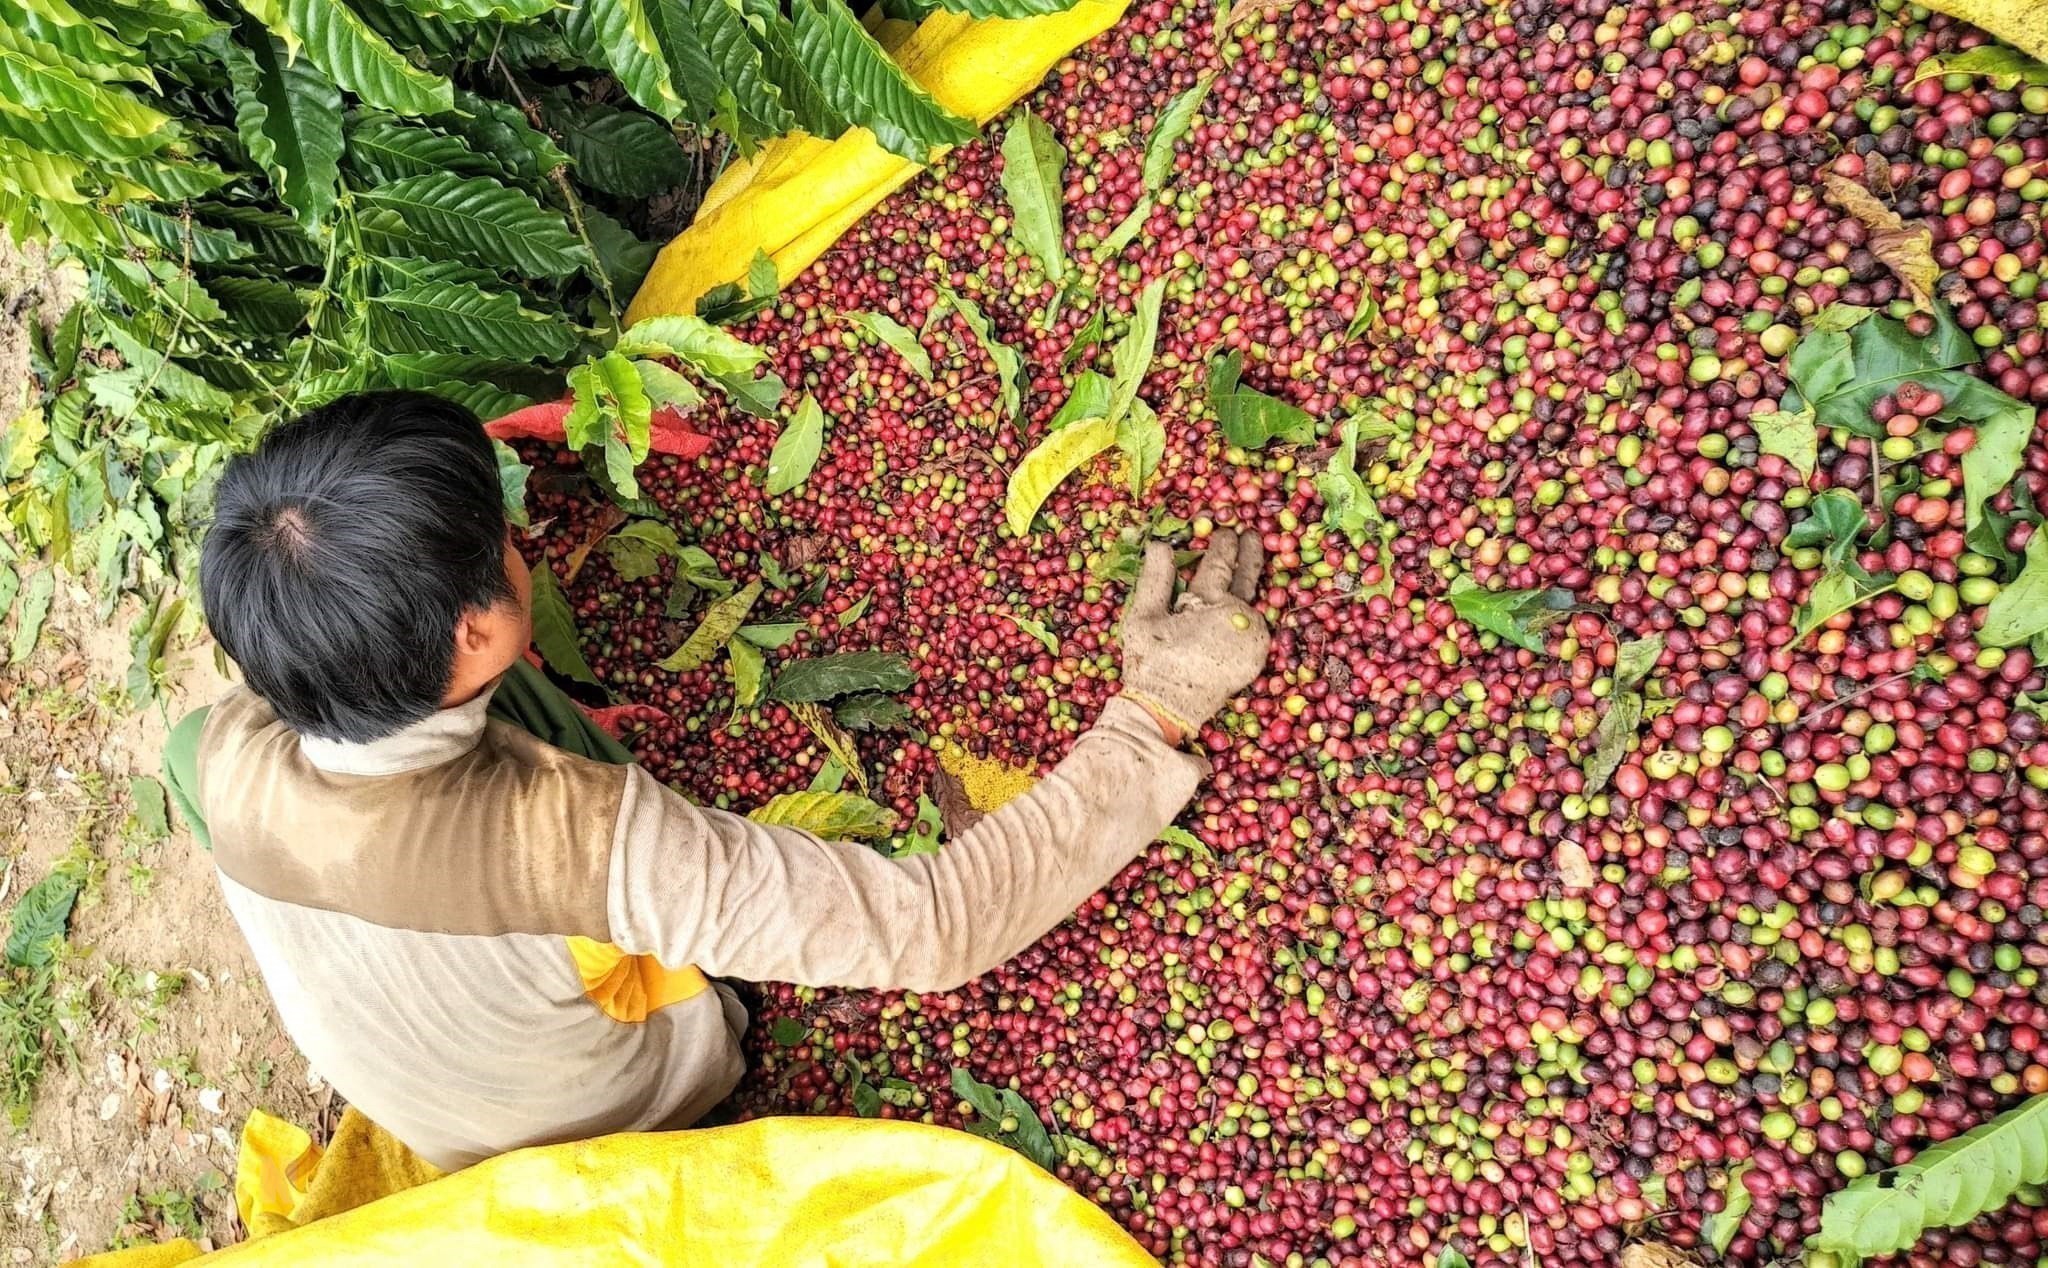 

Chỉ tính riêng trong 8 tháng năm 2022, xuất khẩu cà phê của Việt Nam sang thị trường Anh đạt mức 34,67% nghìn tấn, trị giá là 70,68 triệu USD
